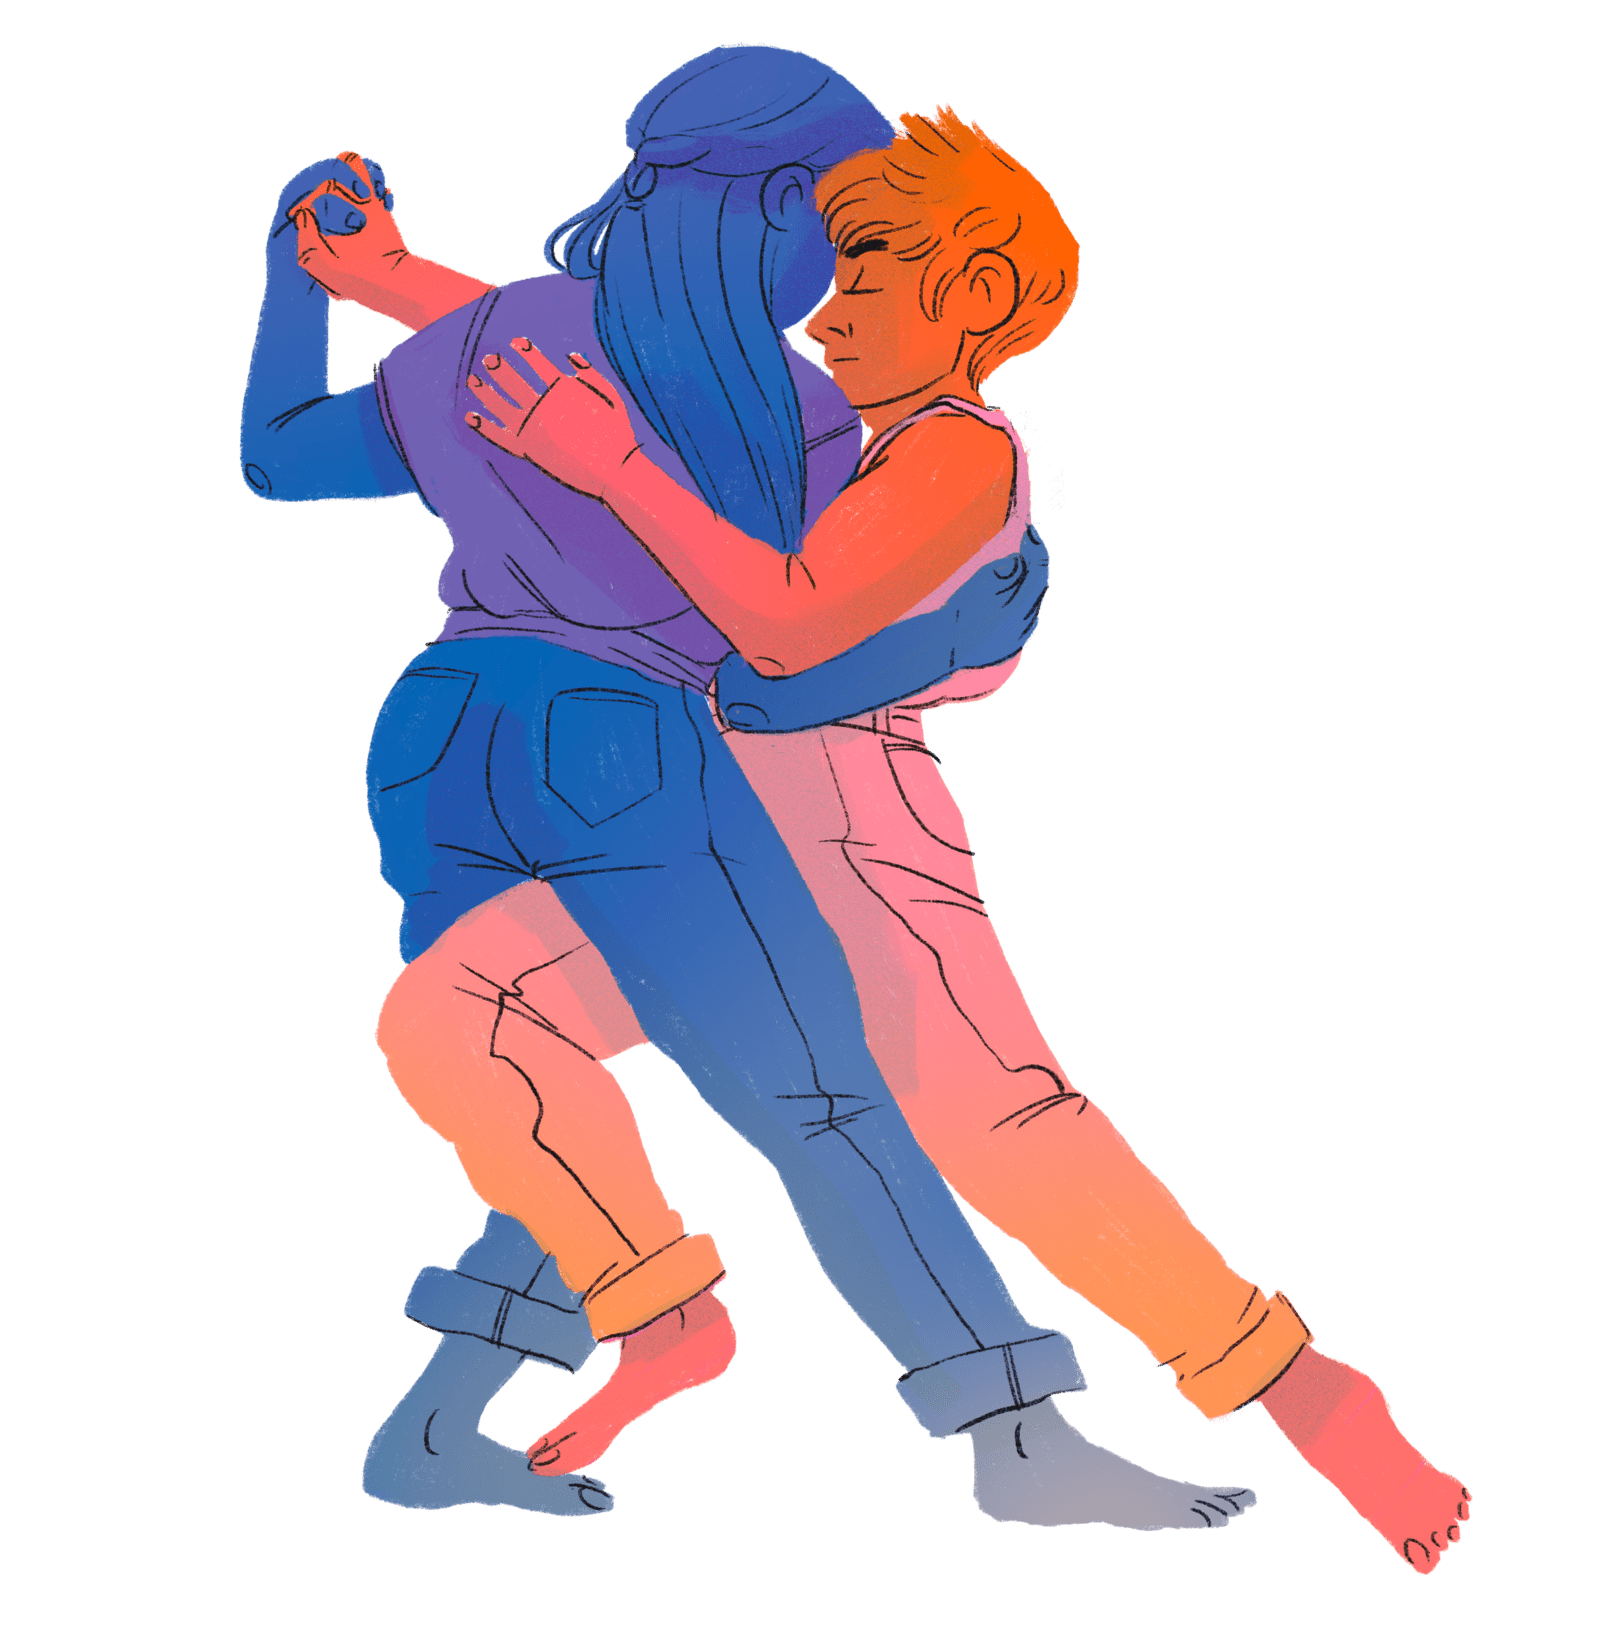 Queer pair dancing